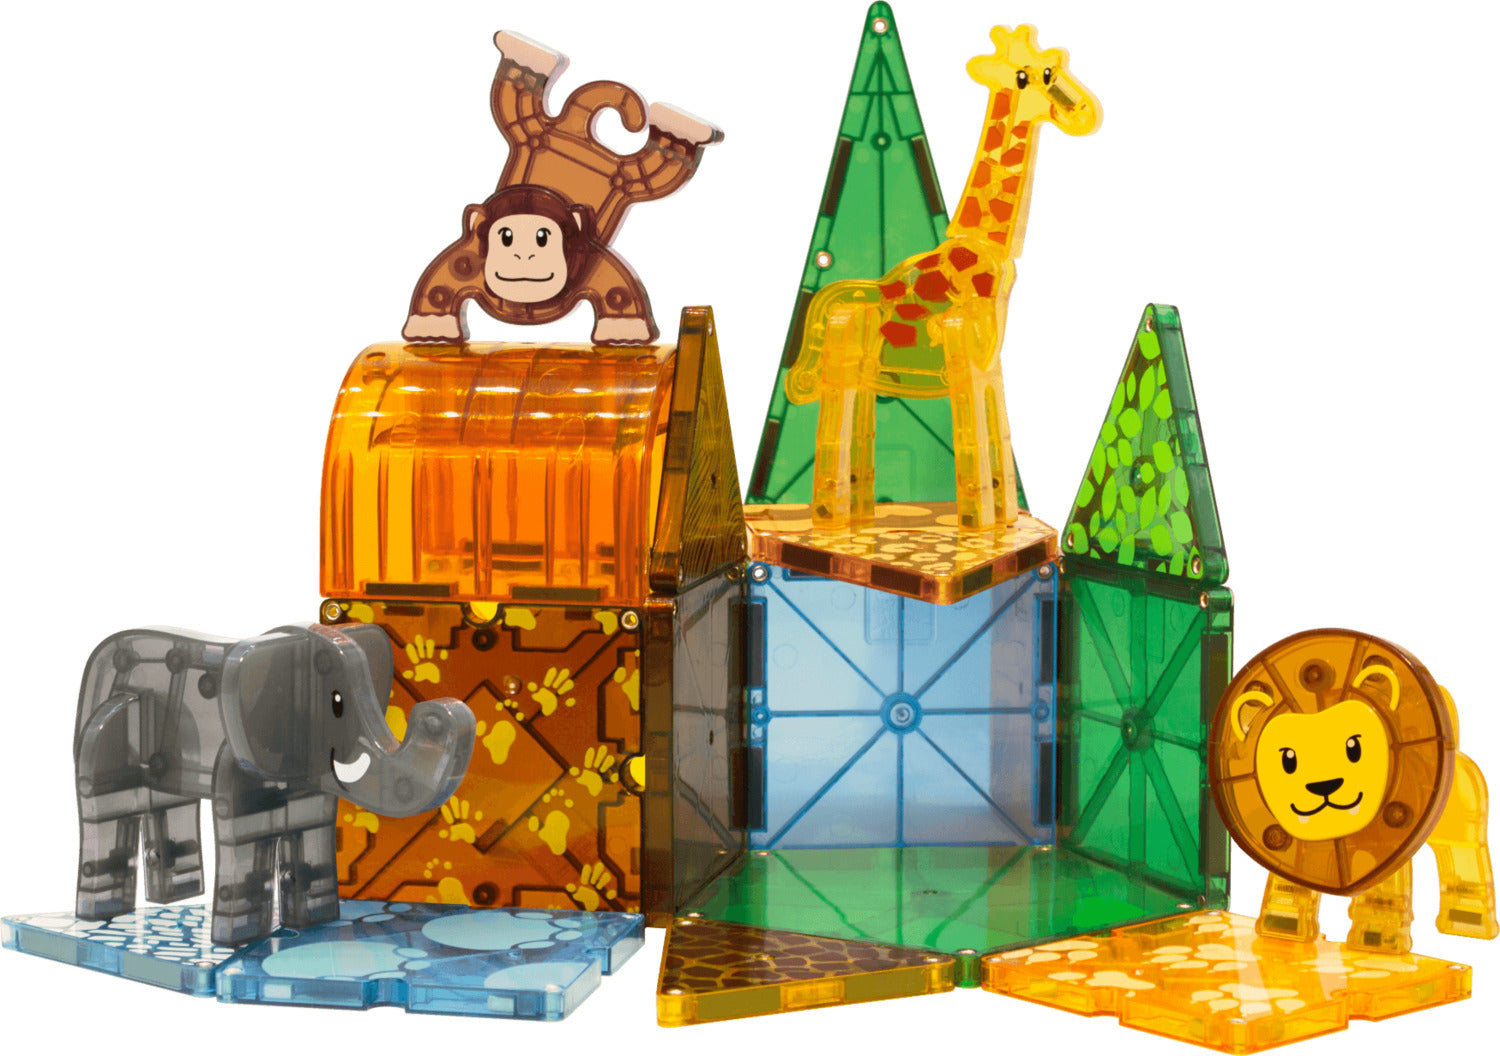 Magna Tiles Safari Animals - 25 Piece Set